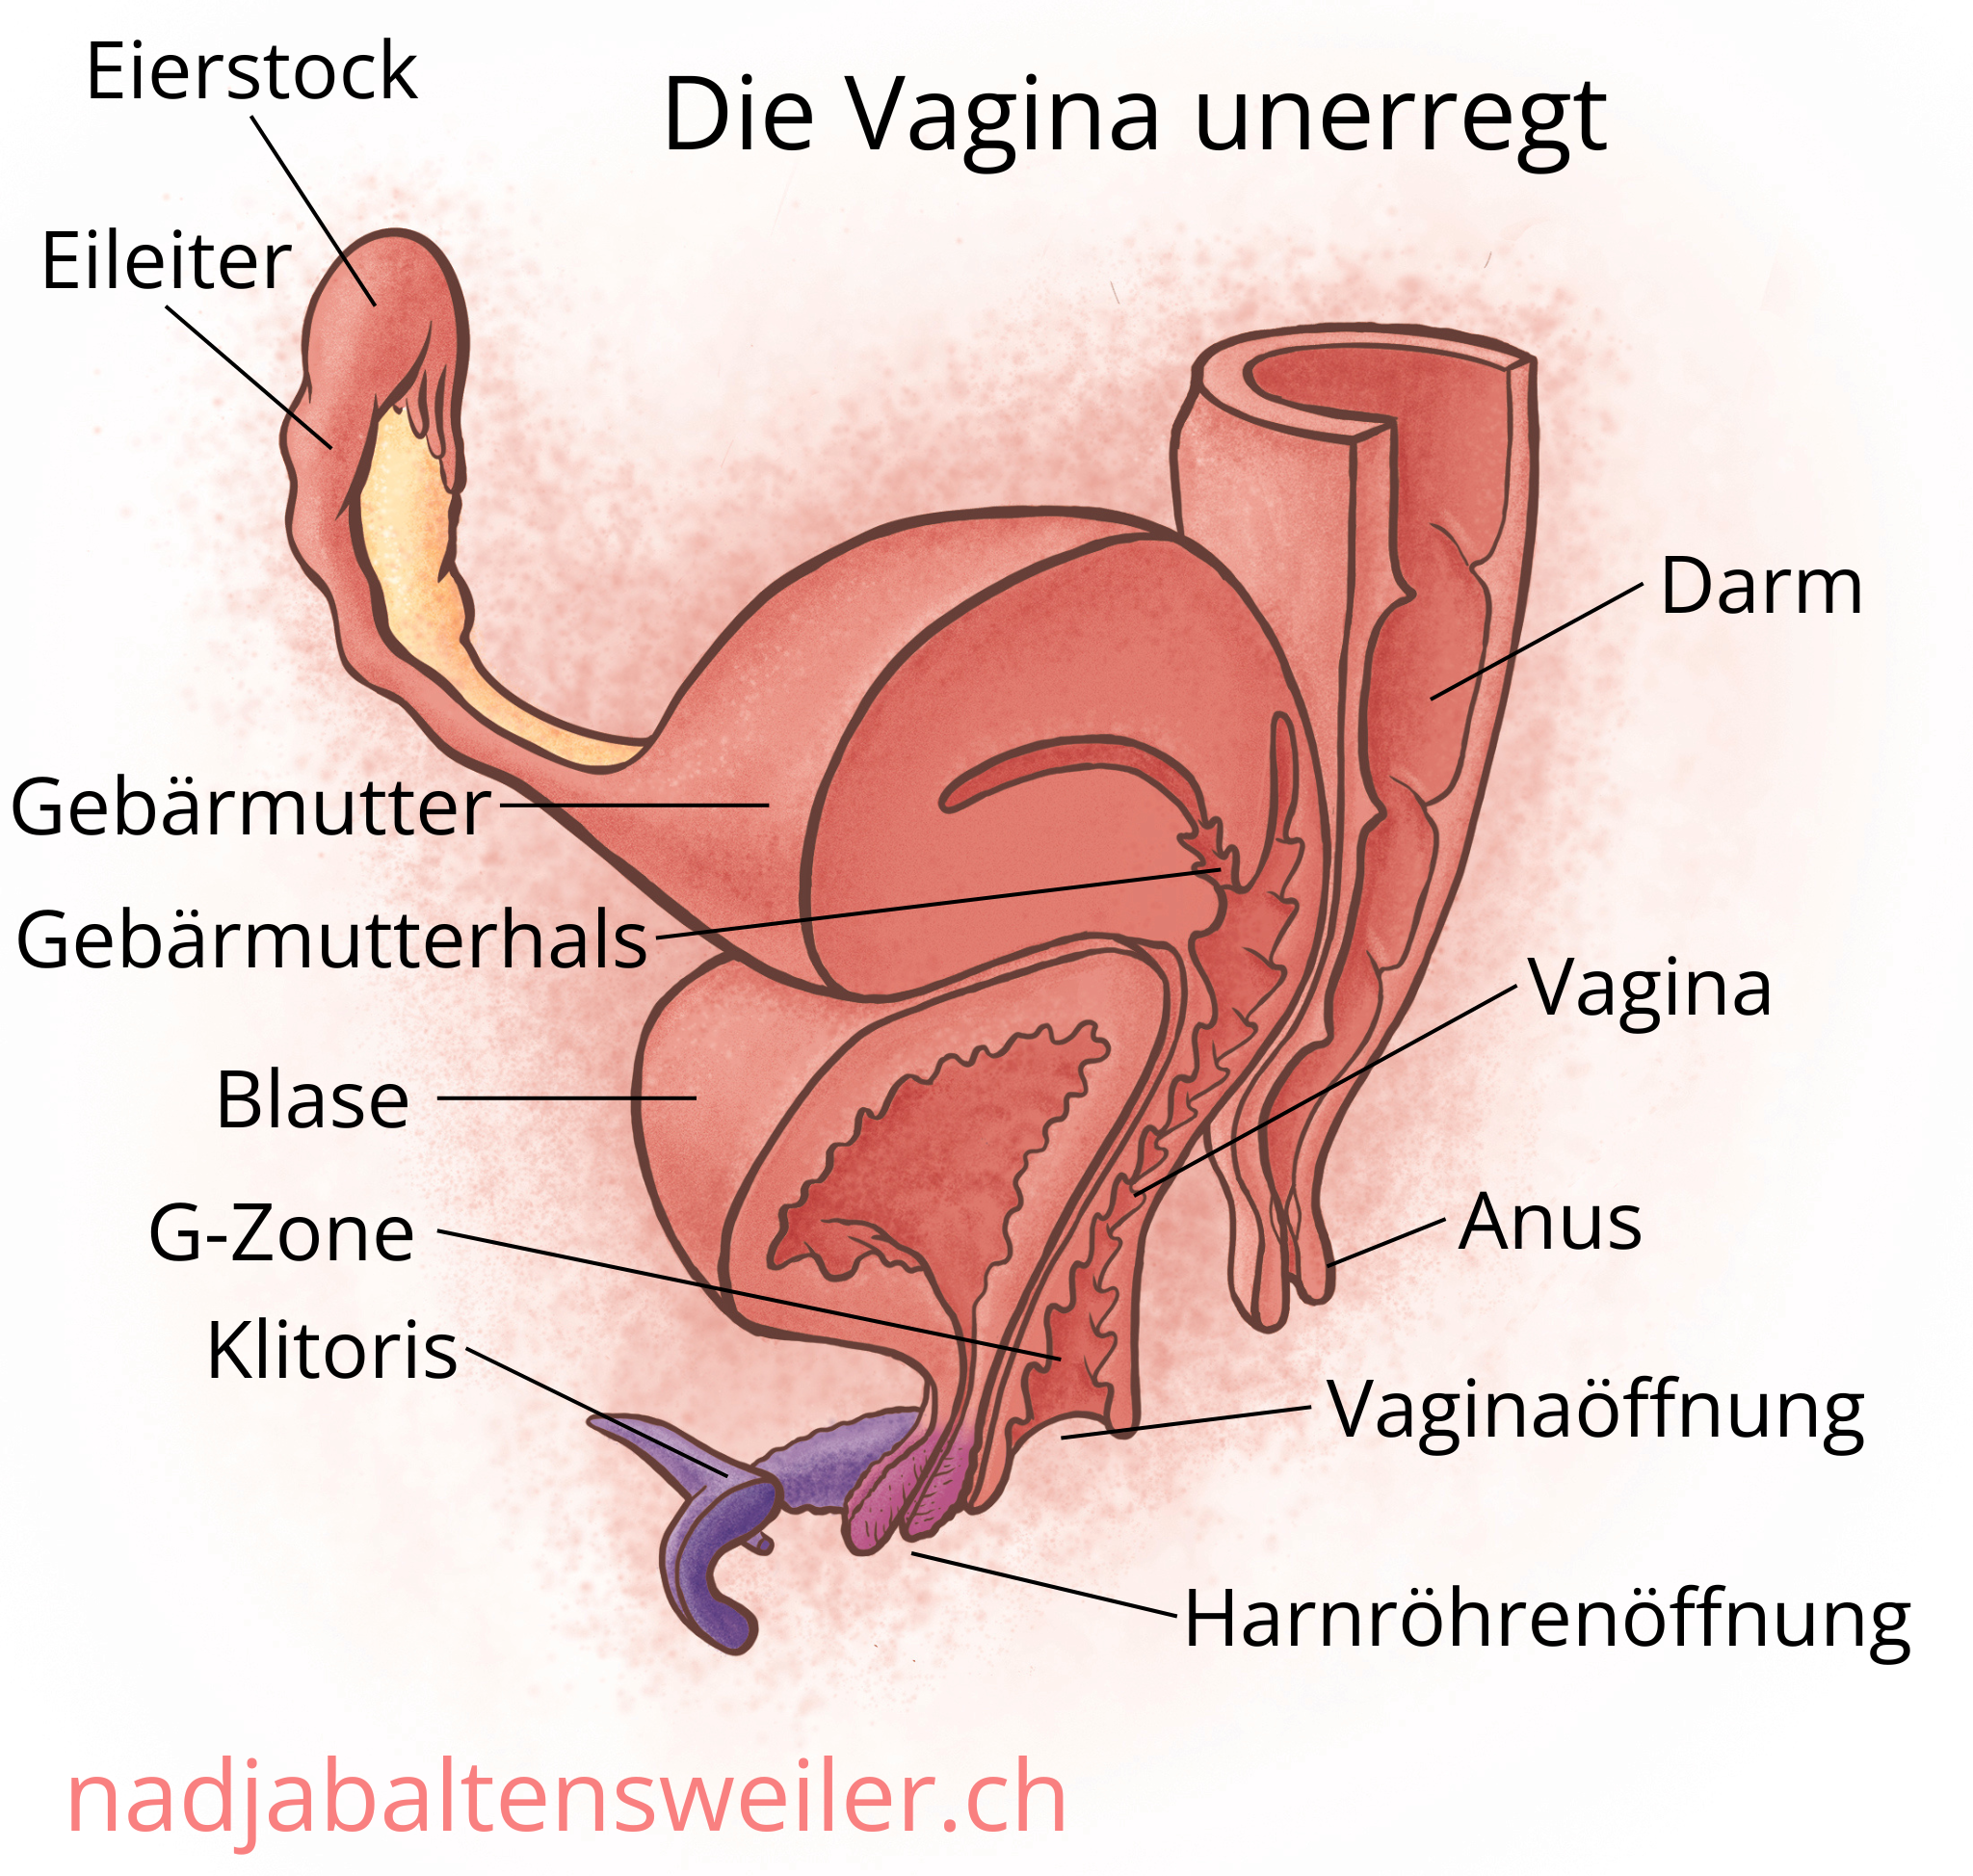 Das Bild zeigt einen Längsschnitt durch Geschlechtsorgane. Ganz vorne ist die Klitoris mit ihren Schenkeln, dahinter ist die Harnröhrenöffnung und dahinter die Vaginaöffnung. Zuhinterst kommt der Anus. An den Anus schließt sich nach oben hin der Darm an. Am oberen Ende der Vagina liegt der Gebärmutterhals, der in die Gebärmutter führt. Seitlich der Gebärmutter schliesst sich der Eileiter und der Eierstock an. Oberhalb der Harnröhrenöffnung liegt die Blase. Sie liegt ausserdem vor der Vagina und unterhalb der Gebärmutter.